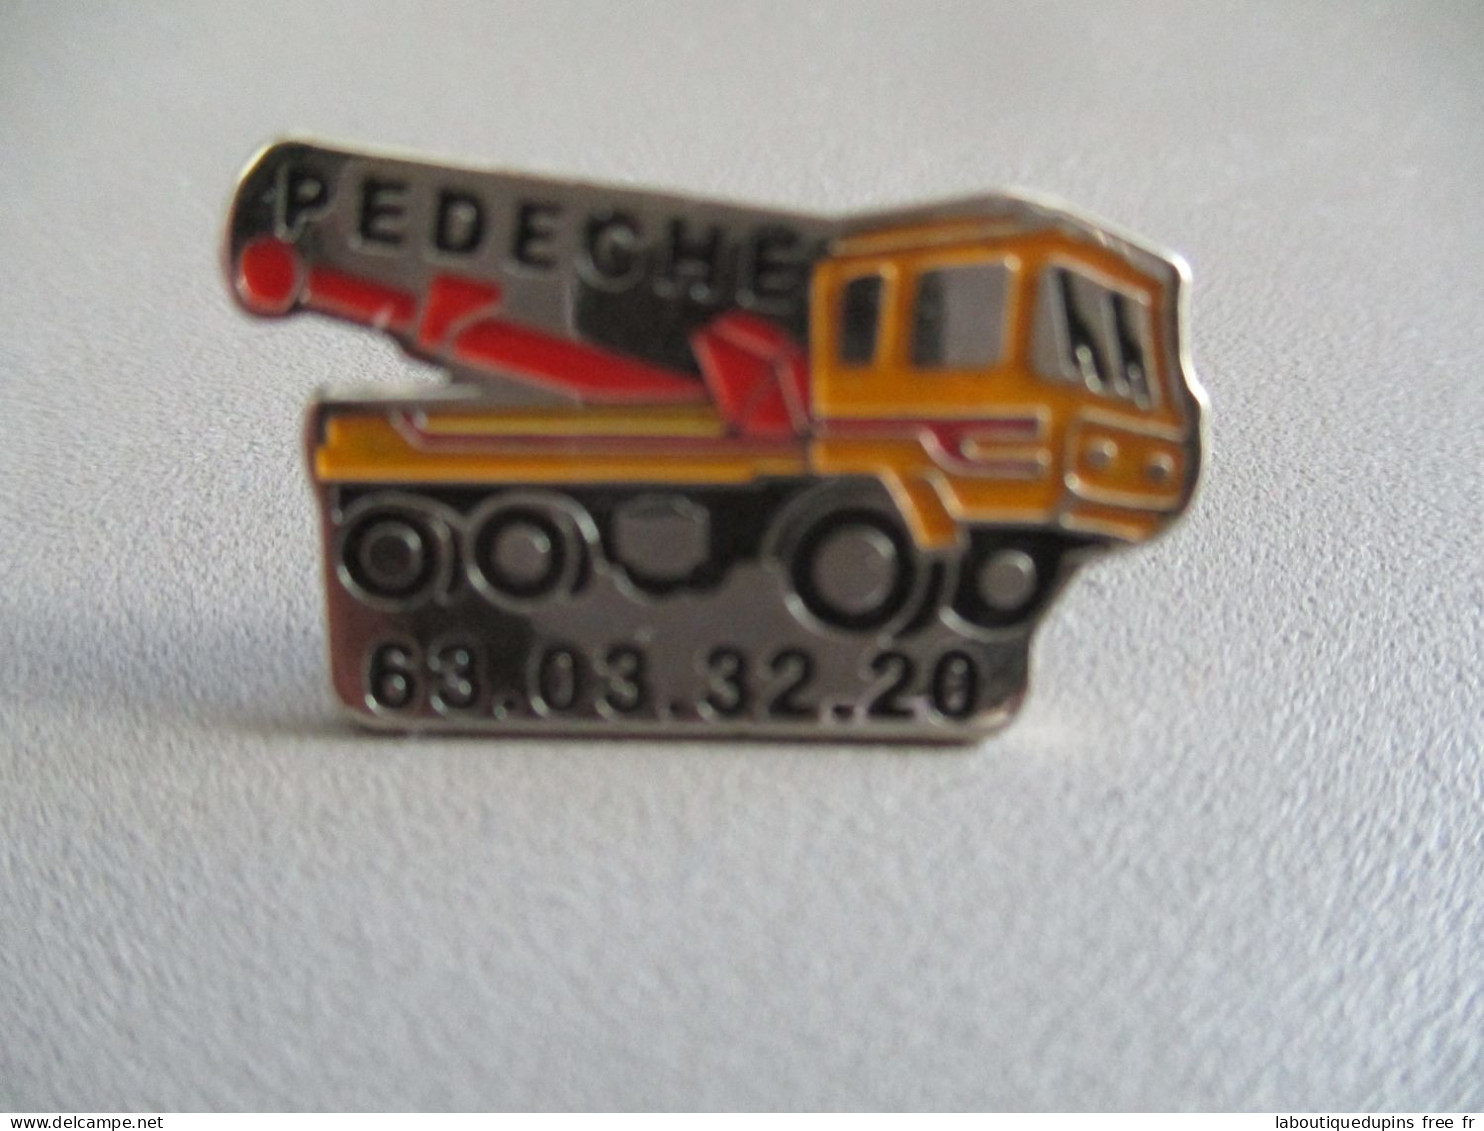 Pin's Lot 005 -- Pedeche 63 03 32 20  -- Exclusif Sur Delcampe - Transportation